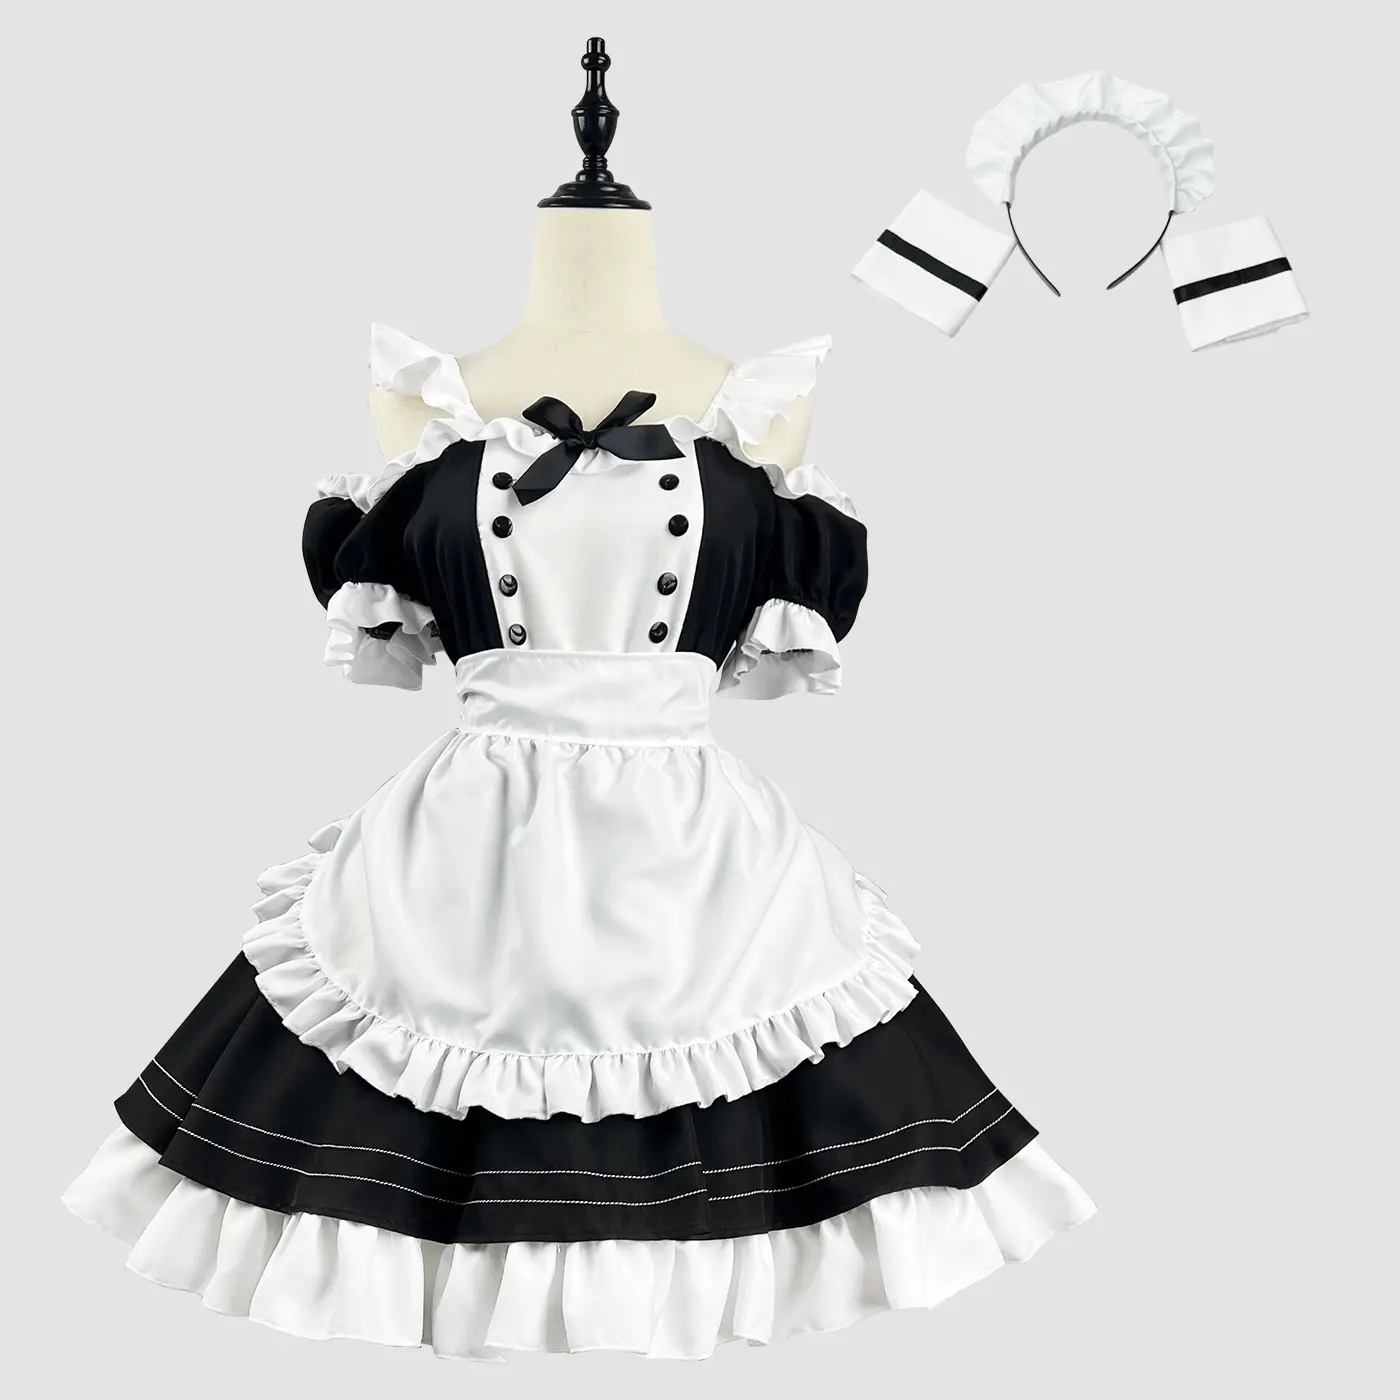 23 nuevo vestido de sirvienta lindo dos yuanes Lolita uniforme restaurante traje